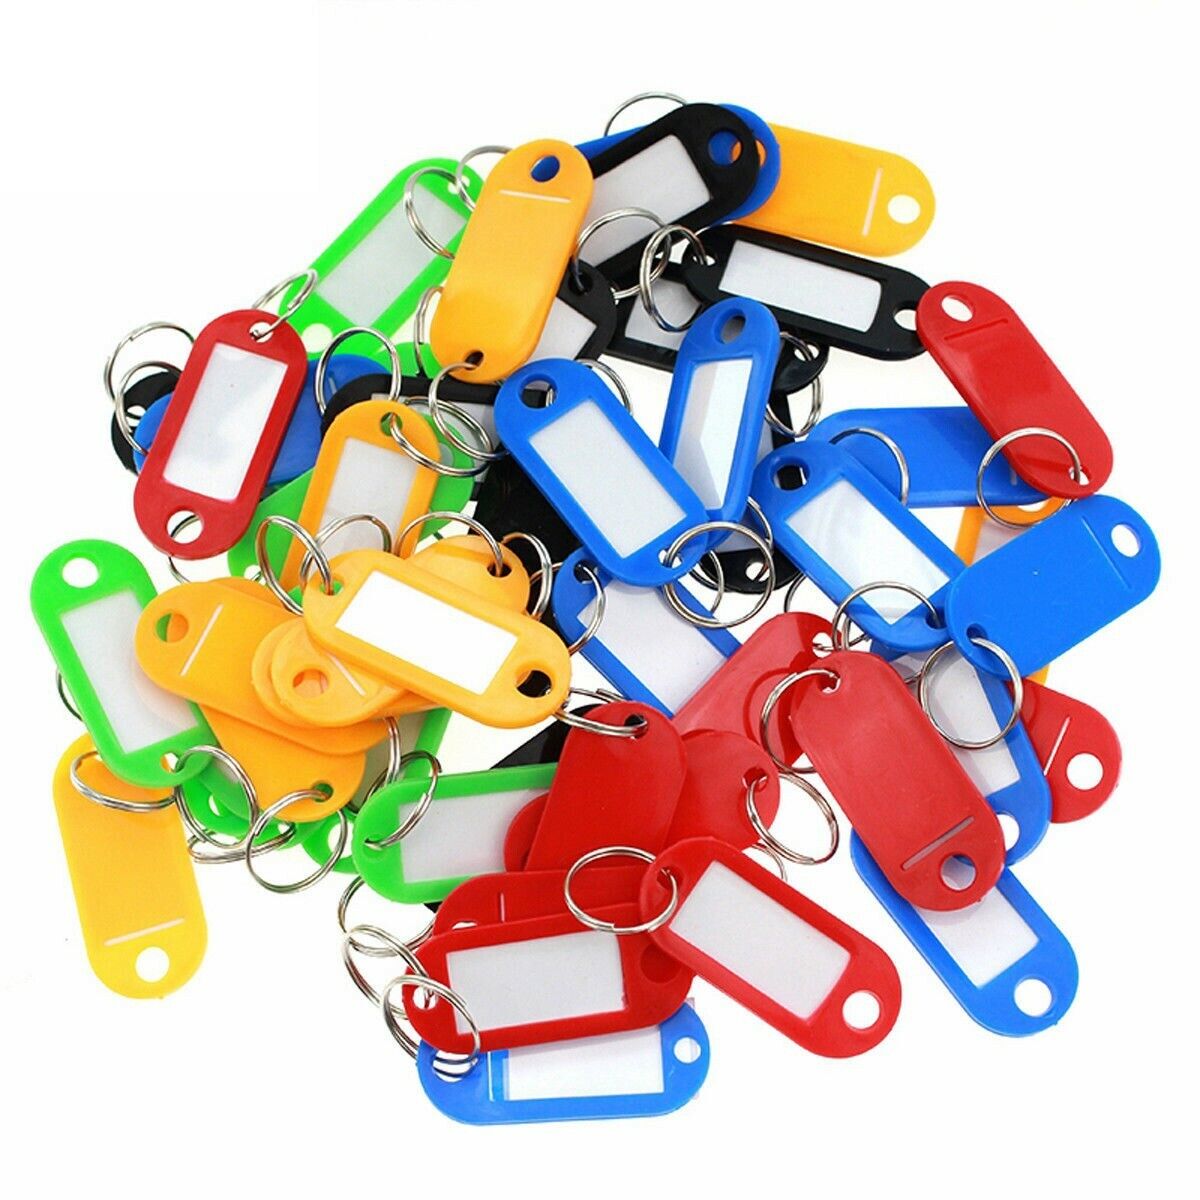 50 Pcs Plastic Key Tags Id Label Name Luggage Car Tags Split Ring Baggage Chains Без бренда - фотография #3